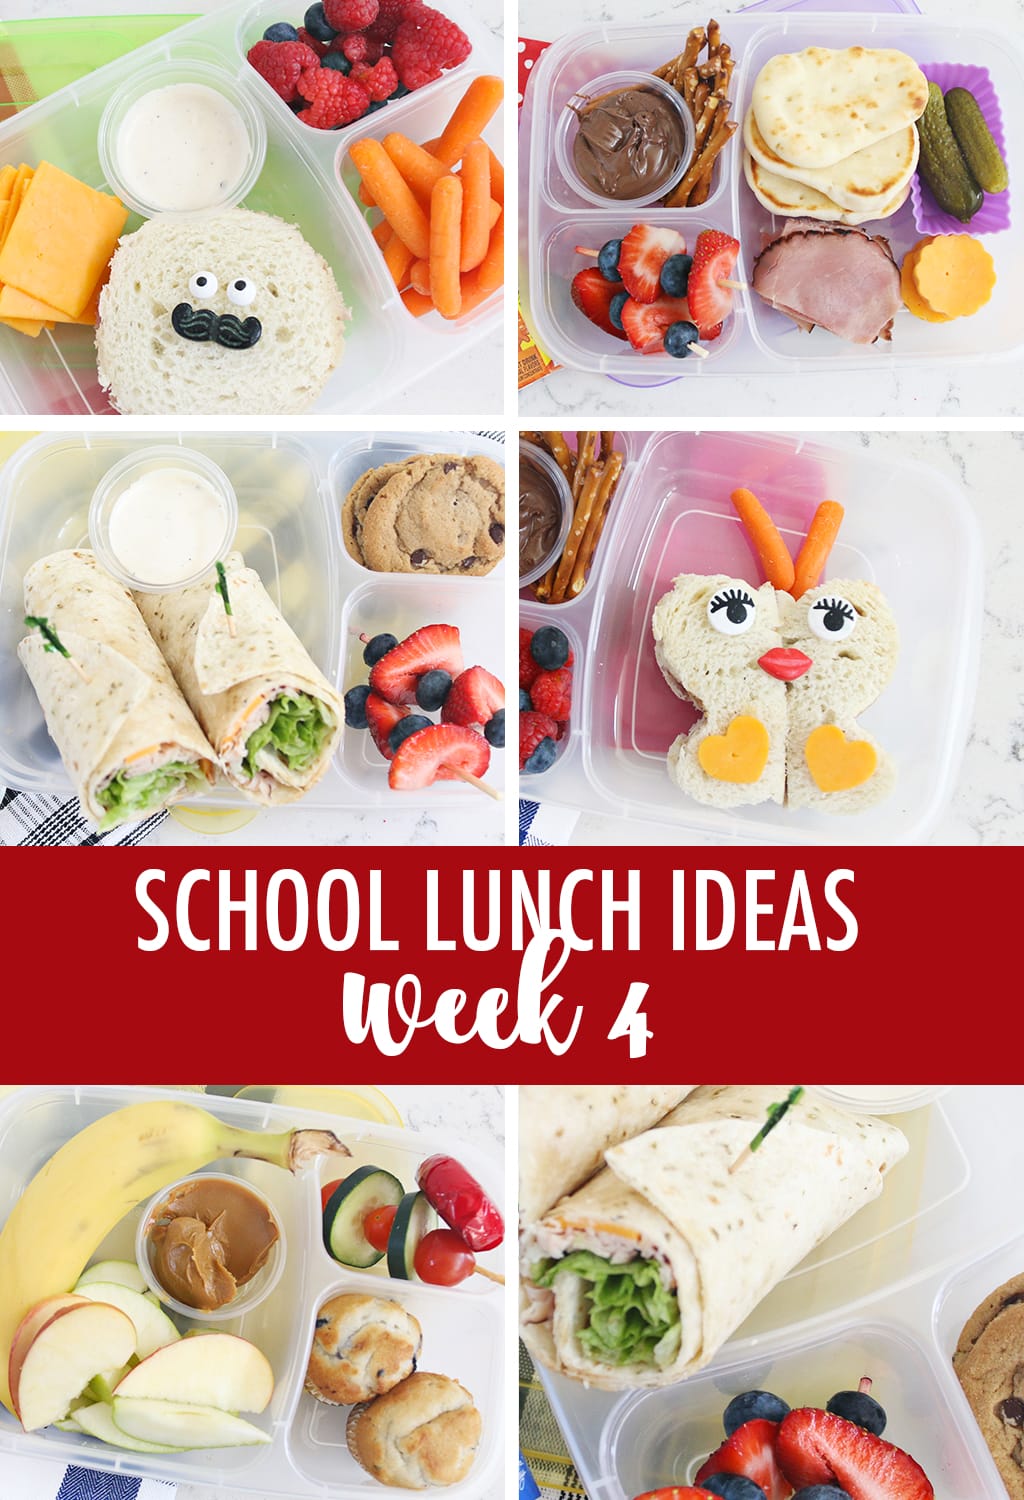 Lunch Ideas for School Week 4